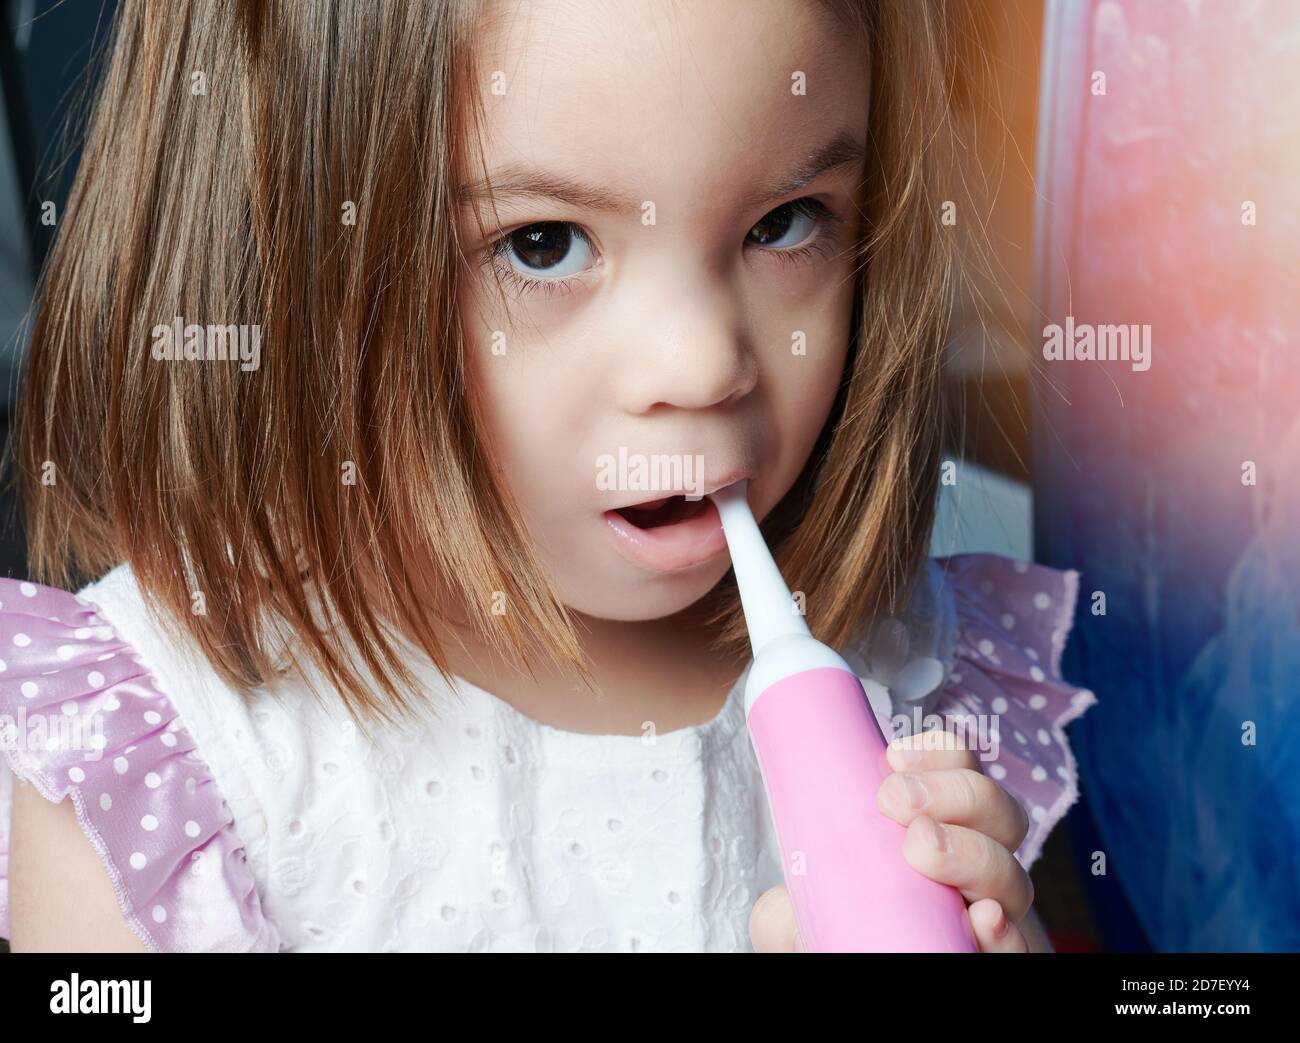 Lernen Pinsel kleines Kind Mädchen Nahaufnahme Porträt. Kinder Zahnmedizin Thema Stockfoto